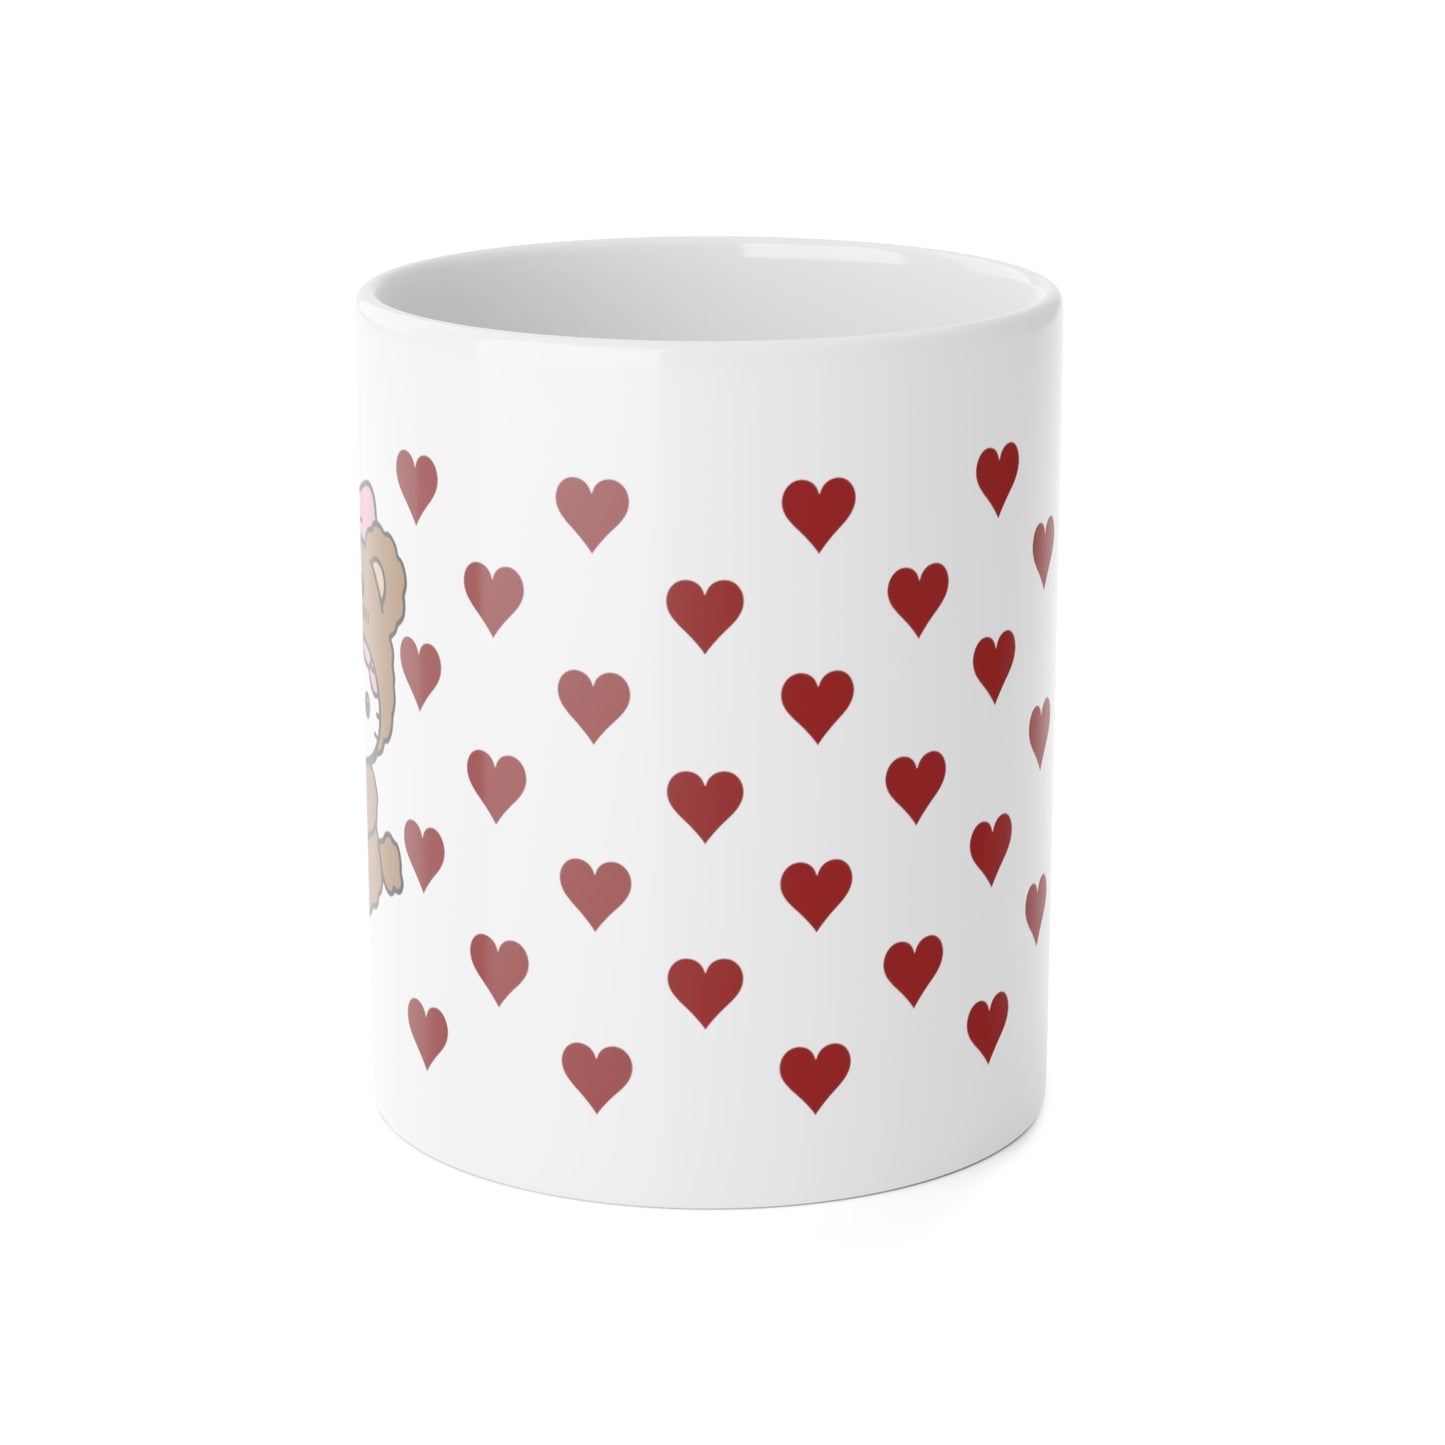 Hello Kitty Bear of Hearts Ceramic Mug